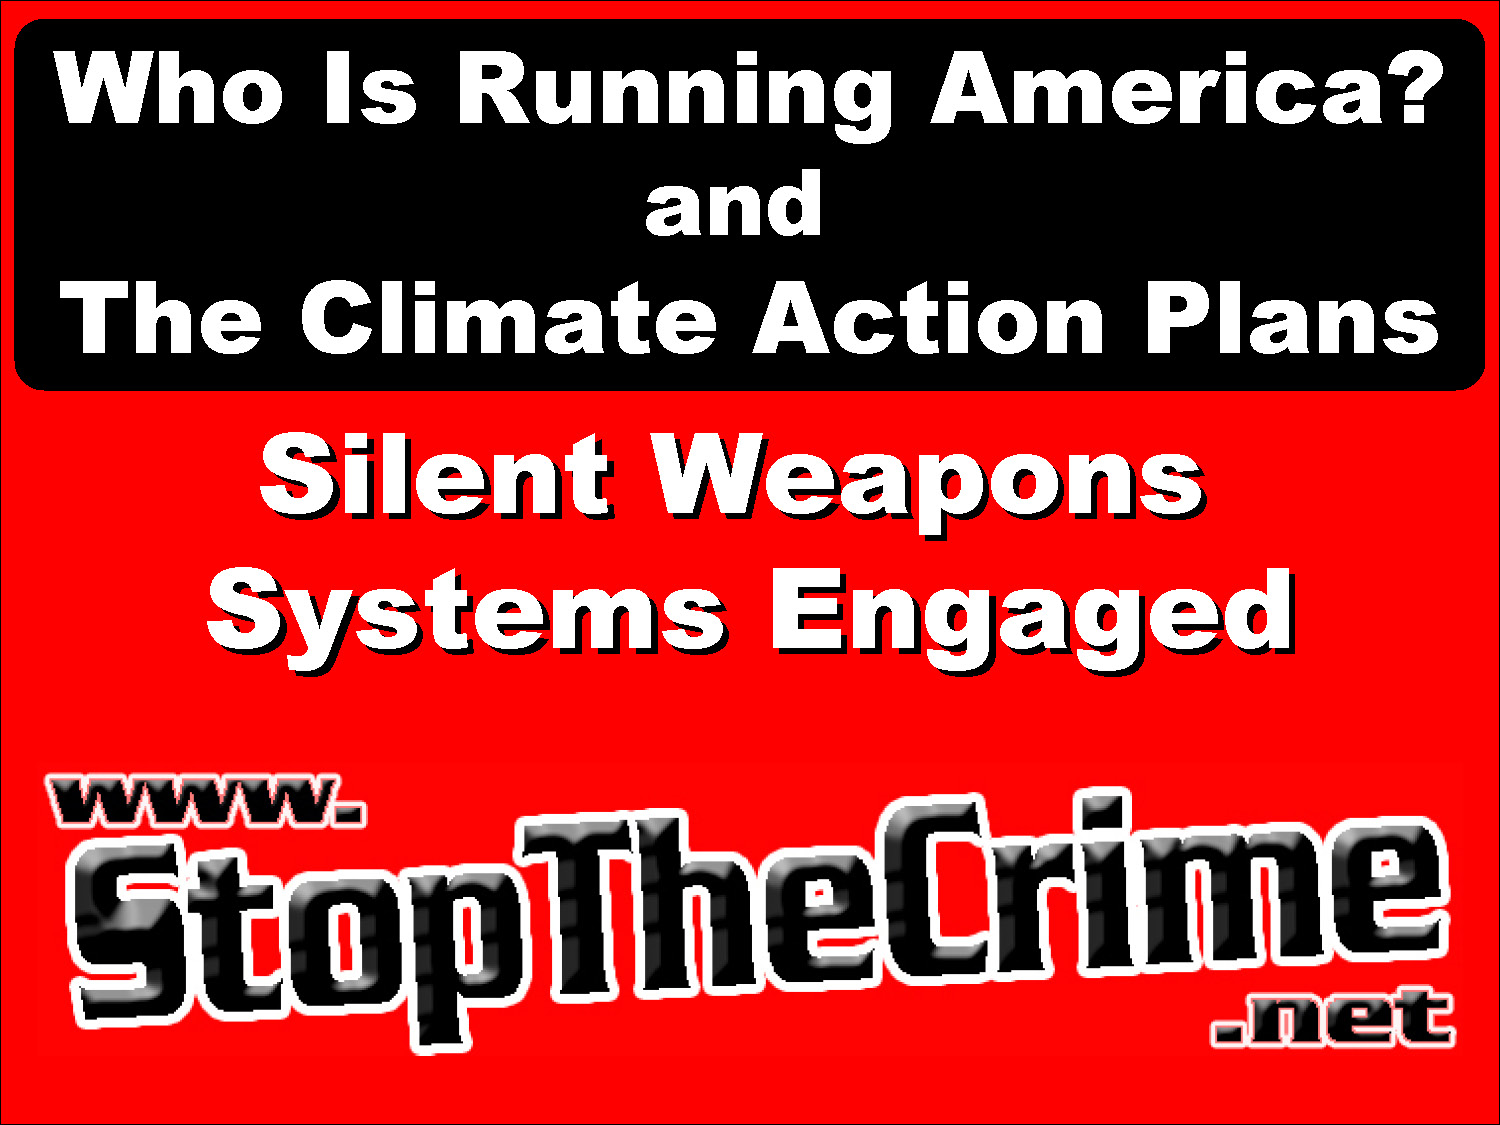 Deborah Tavares | | 03/12/2013 | Alert --  C.A.P. - Climate Action Plans = Controlling All People